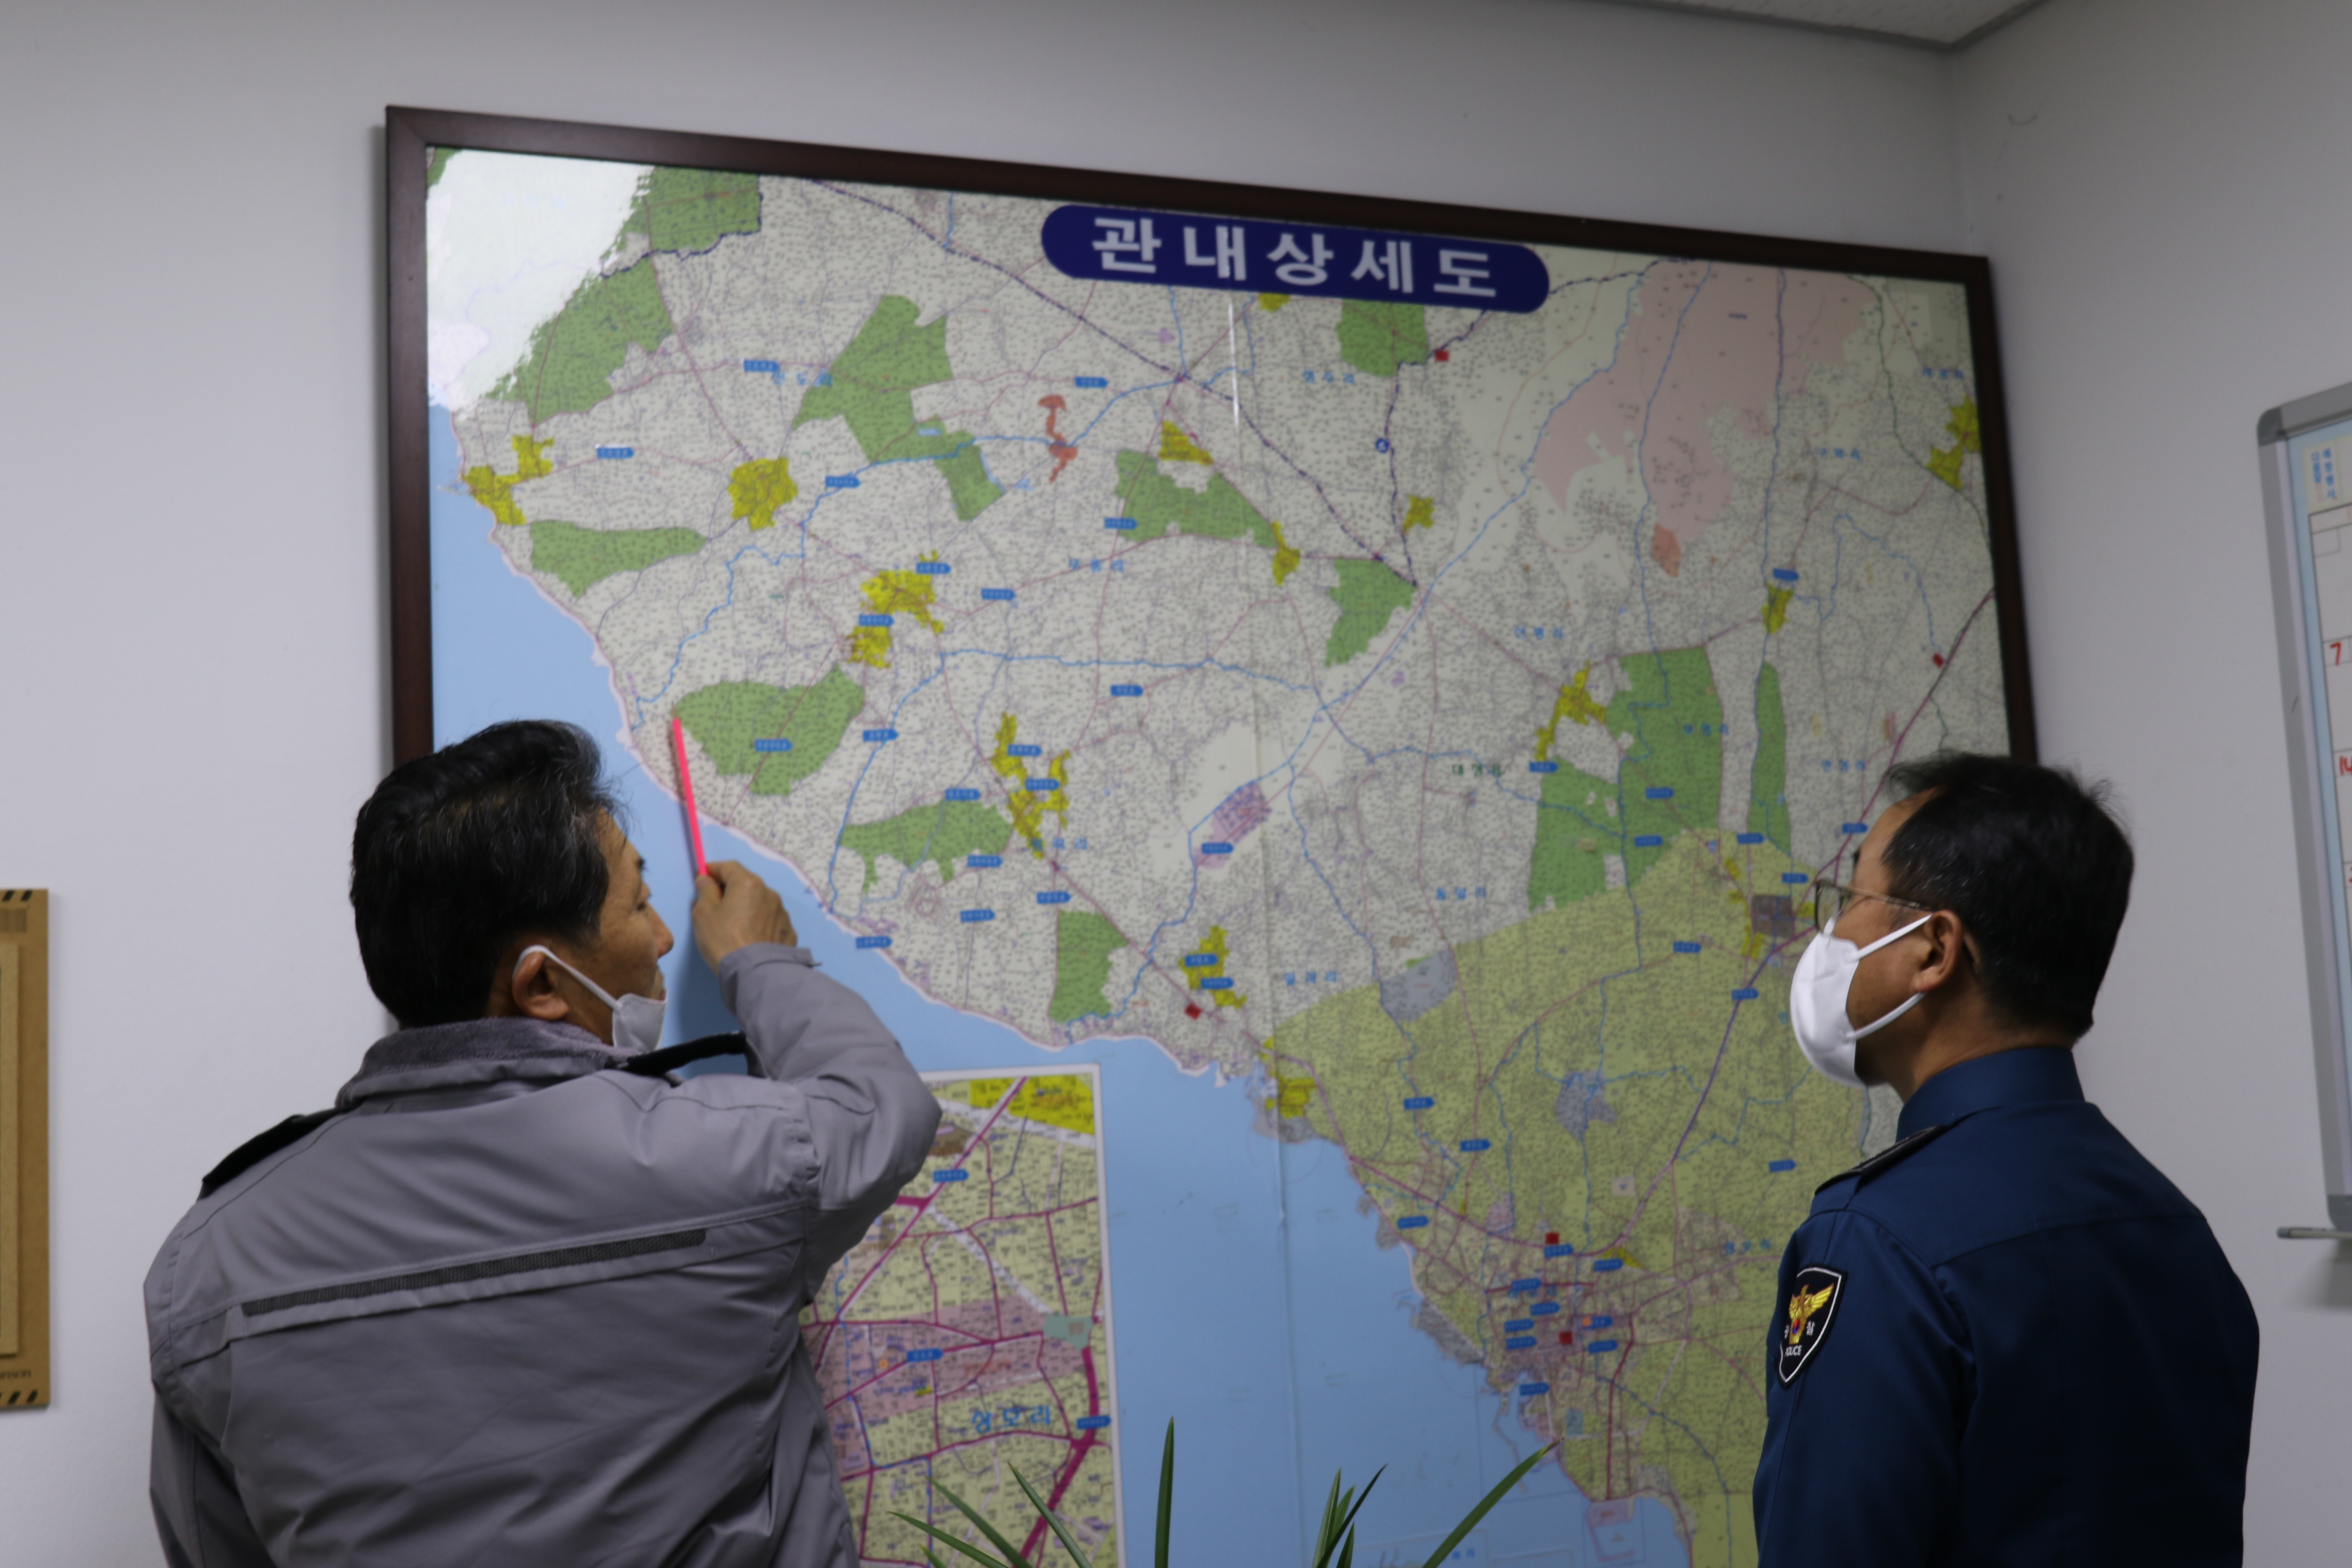 서귀포서, 지역경찰관서(안덕·대정·영어도시) 치안현장 방문 격려